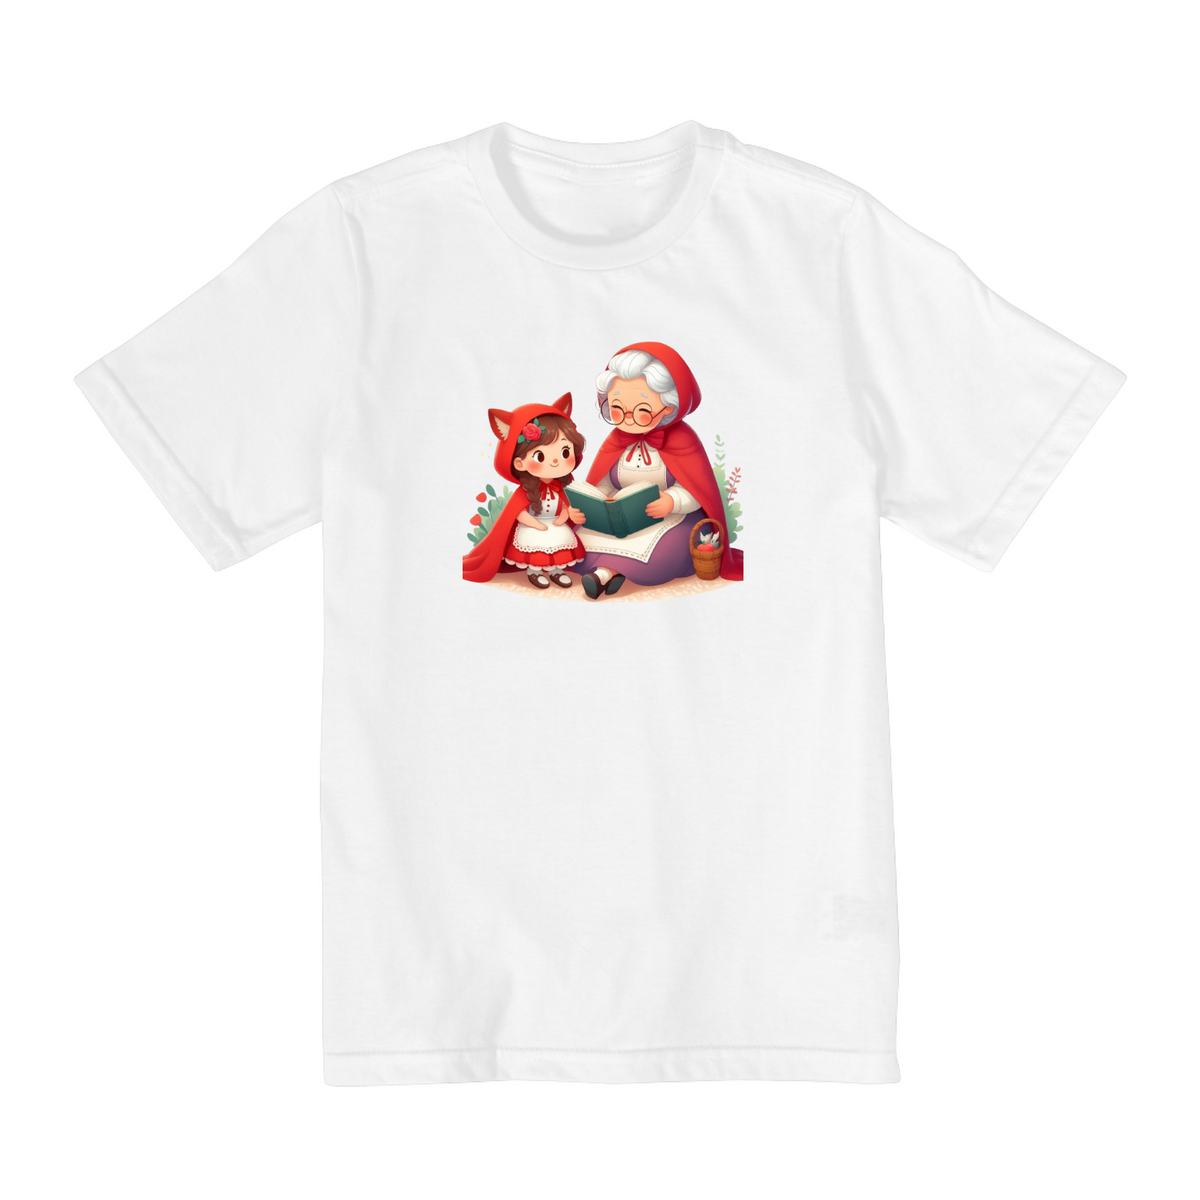 Nome do produto: Camiseta Infantil Contos da Vovó e Chapeuzinho Vermelho